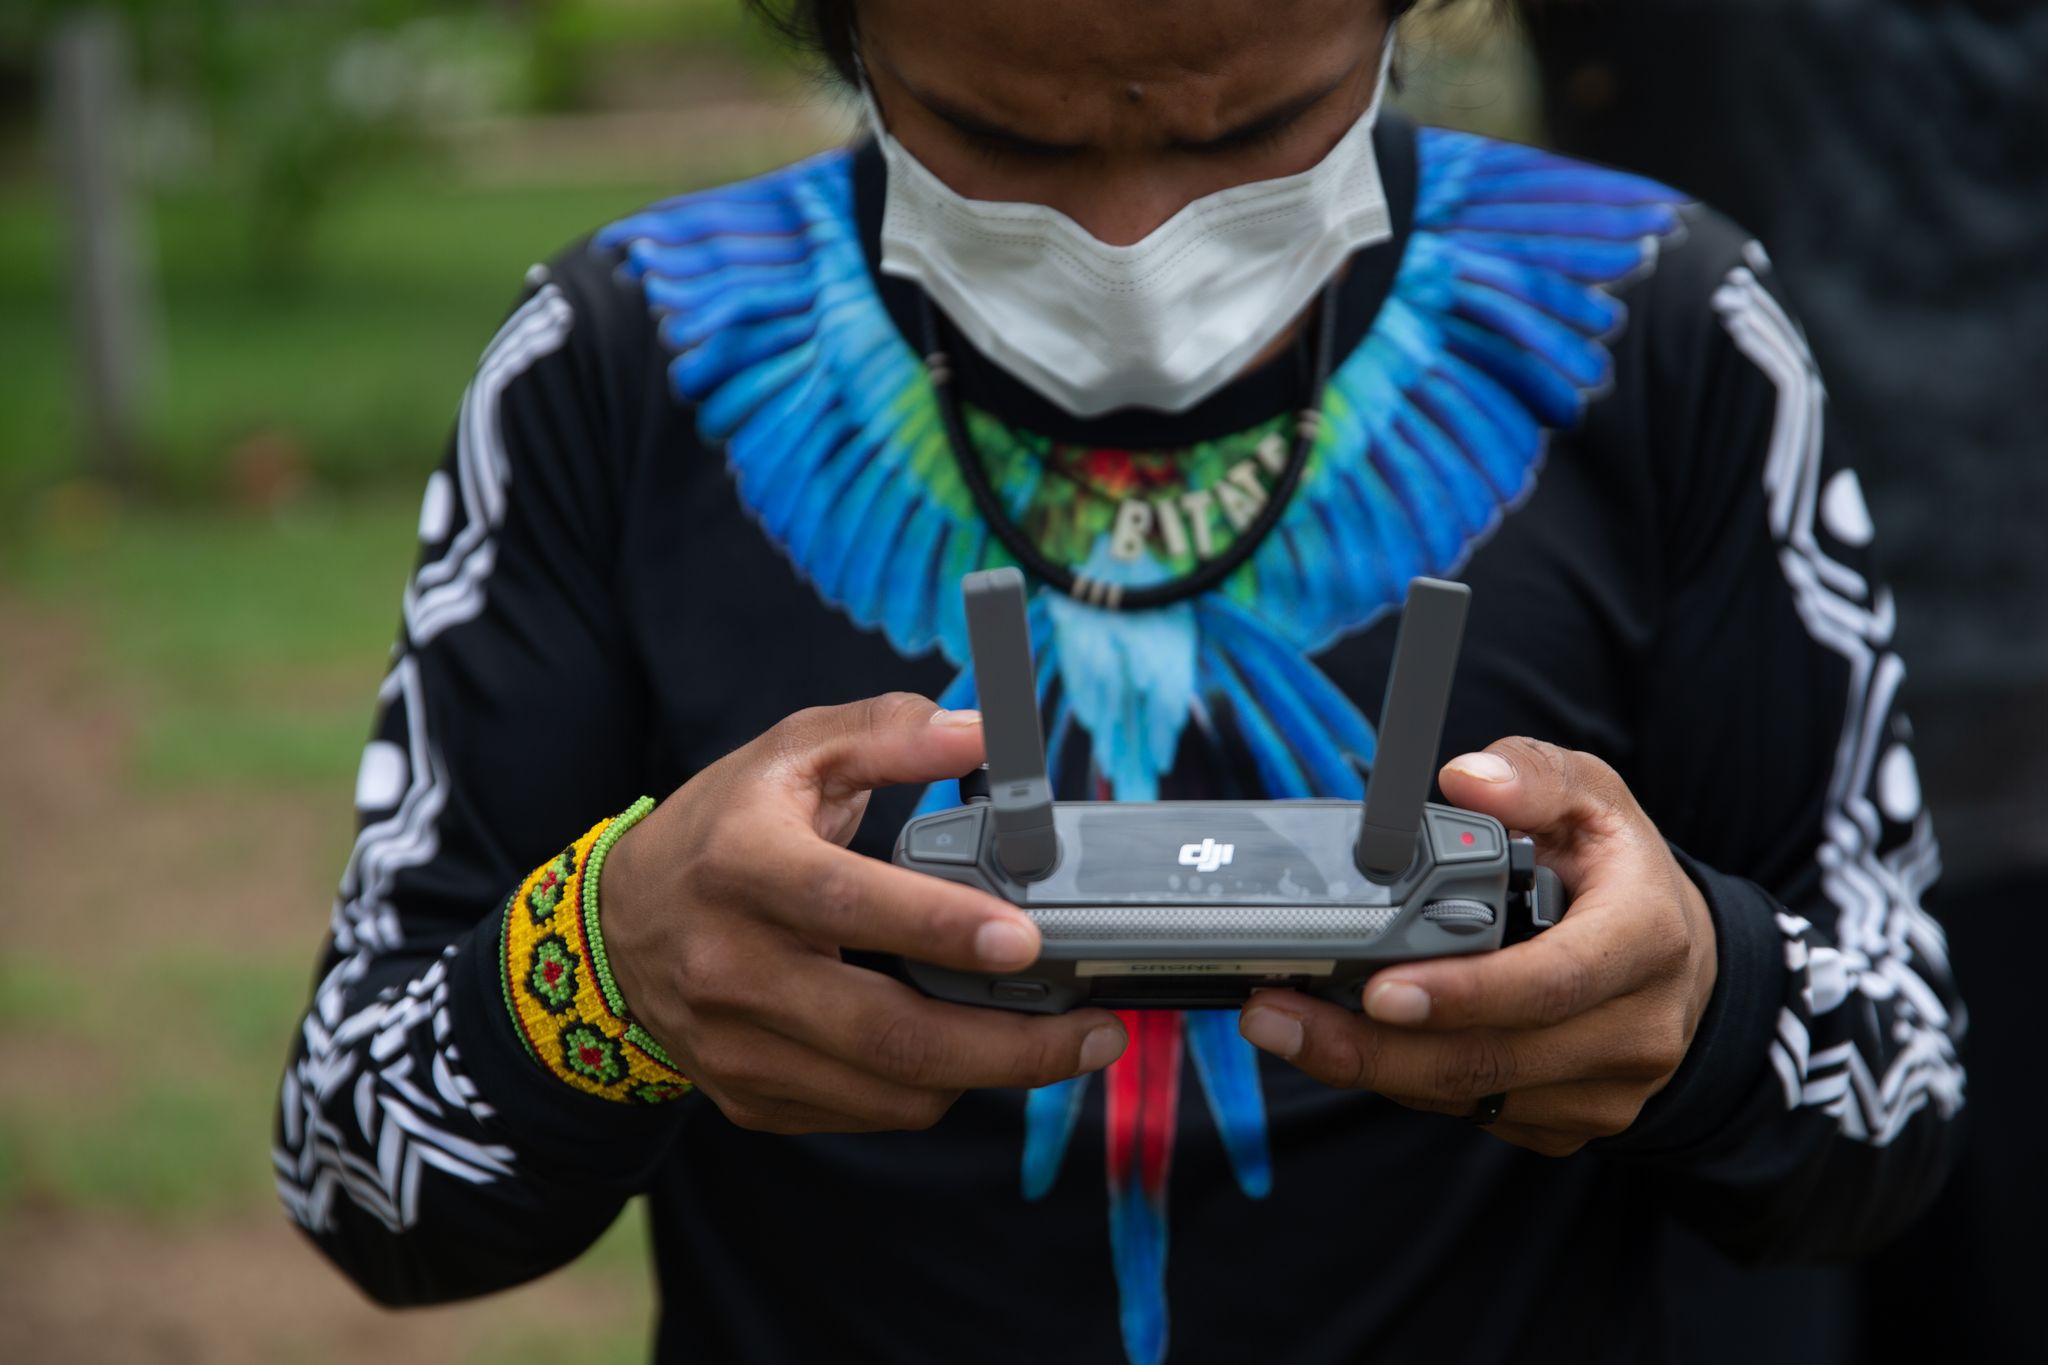 ARCHIVO - Bitaté Uru Eu Wau Wau, integrante de la etnia indígena de los Uru Eu Wau Wau, maneja un dron en el marco del curso impartido por las ONG Asociación de Defensa Etnoambiental Kanindé y WWF. Foto: Fernando Souza/dpa